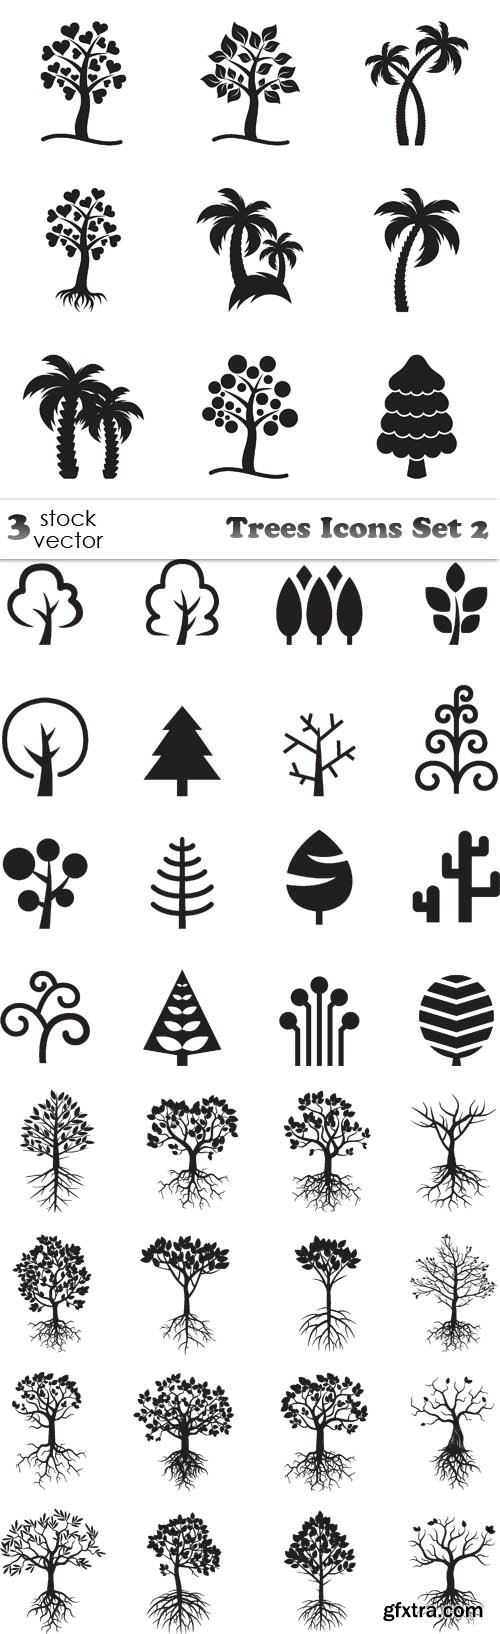 Vectors - Trees Icons Set 2